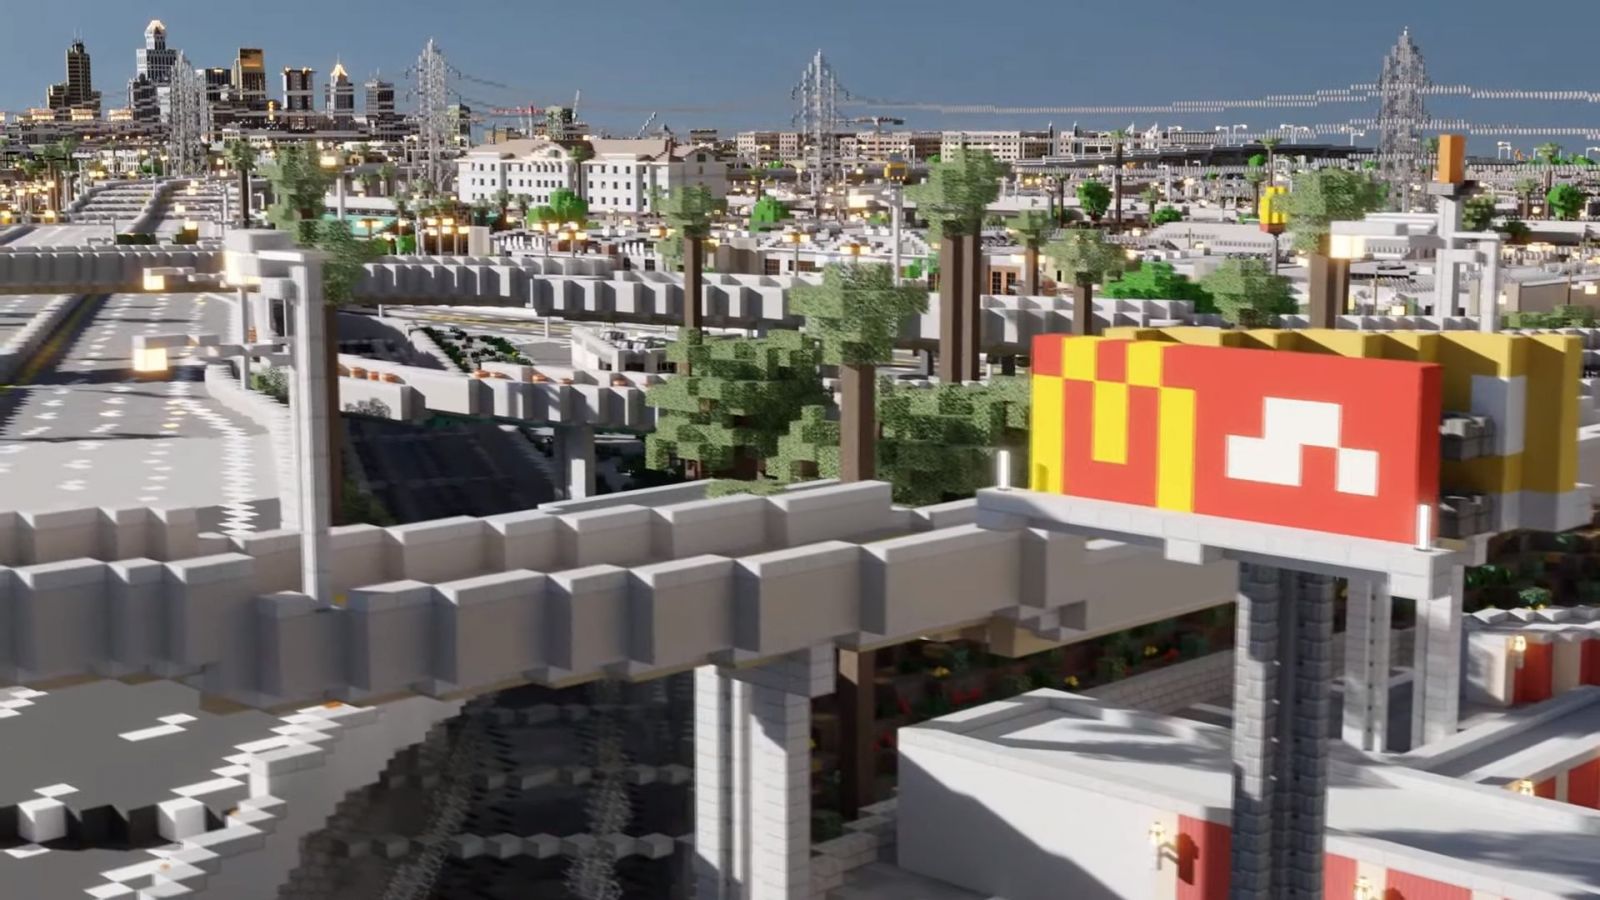 Najväčší projekt v Minecrafte, Los Angeles v mierke 1:1. Viac ako 400 hráčov ho buduje už 9 rokov a nie sú ani v polovici.